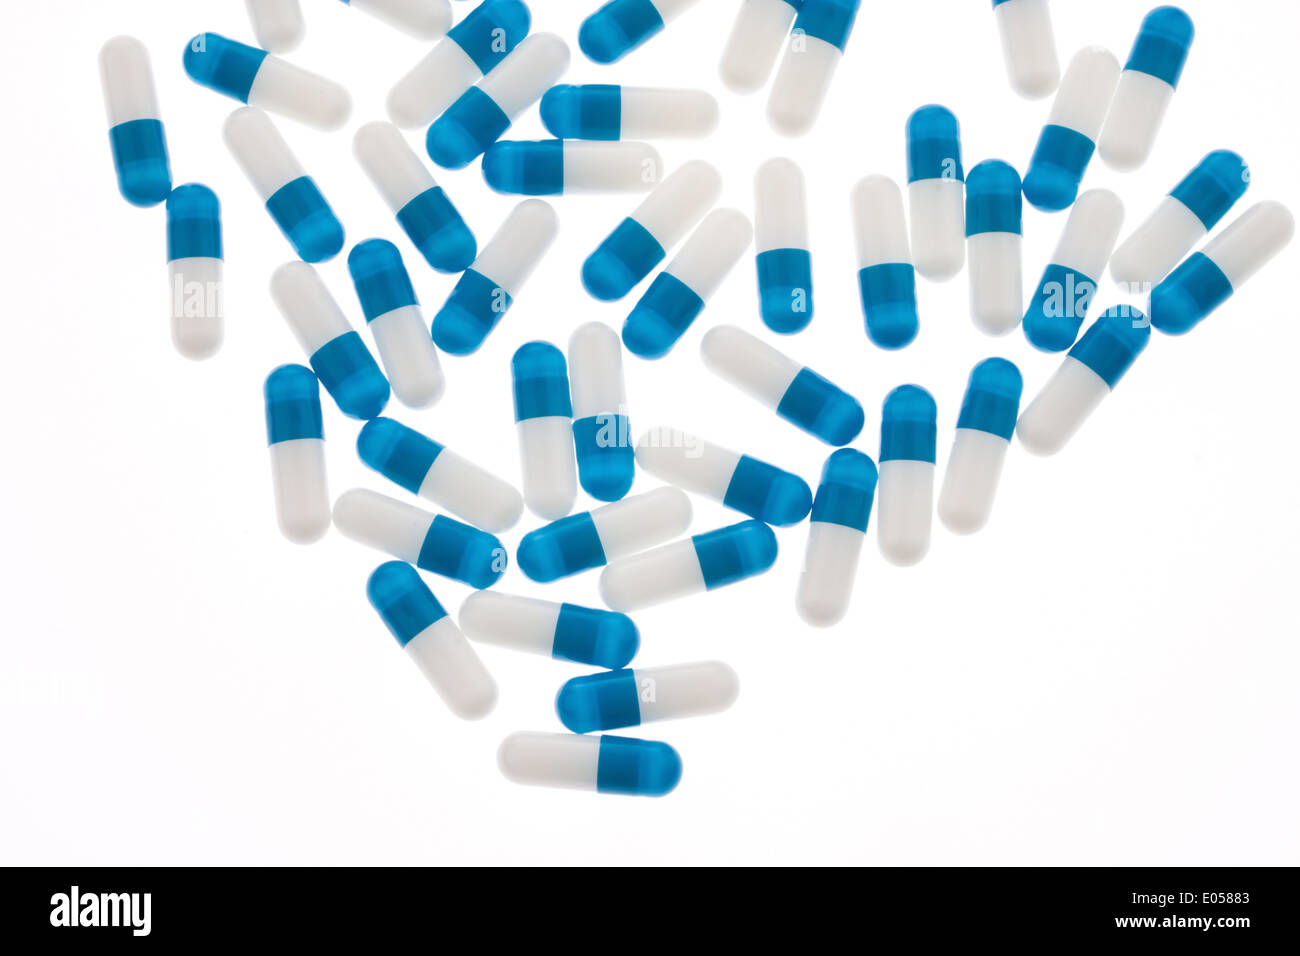 Baluweisse Tabletten Kapseln eines Schmerzmittels, Baluweisse Tabletten Kapseln Eines Schmerzmittels Stockfoto